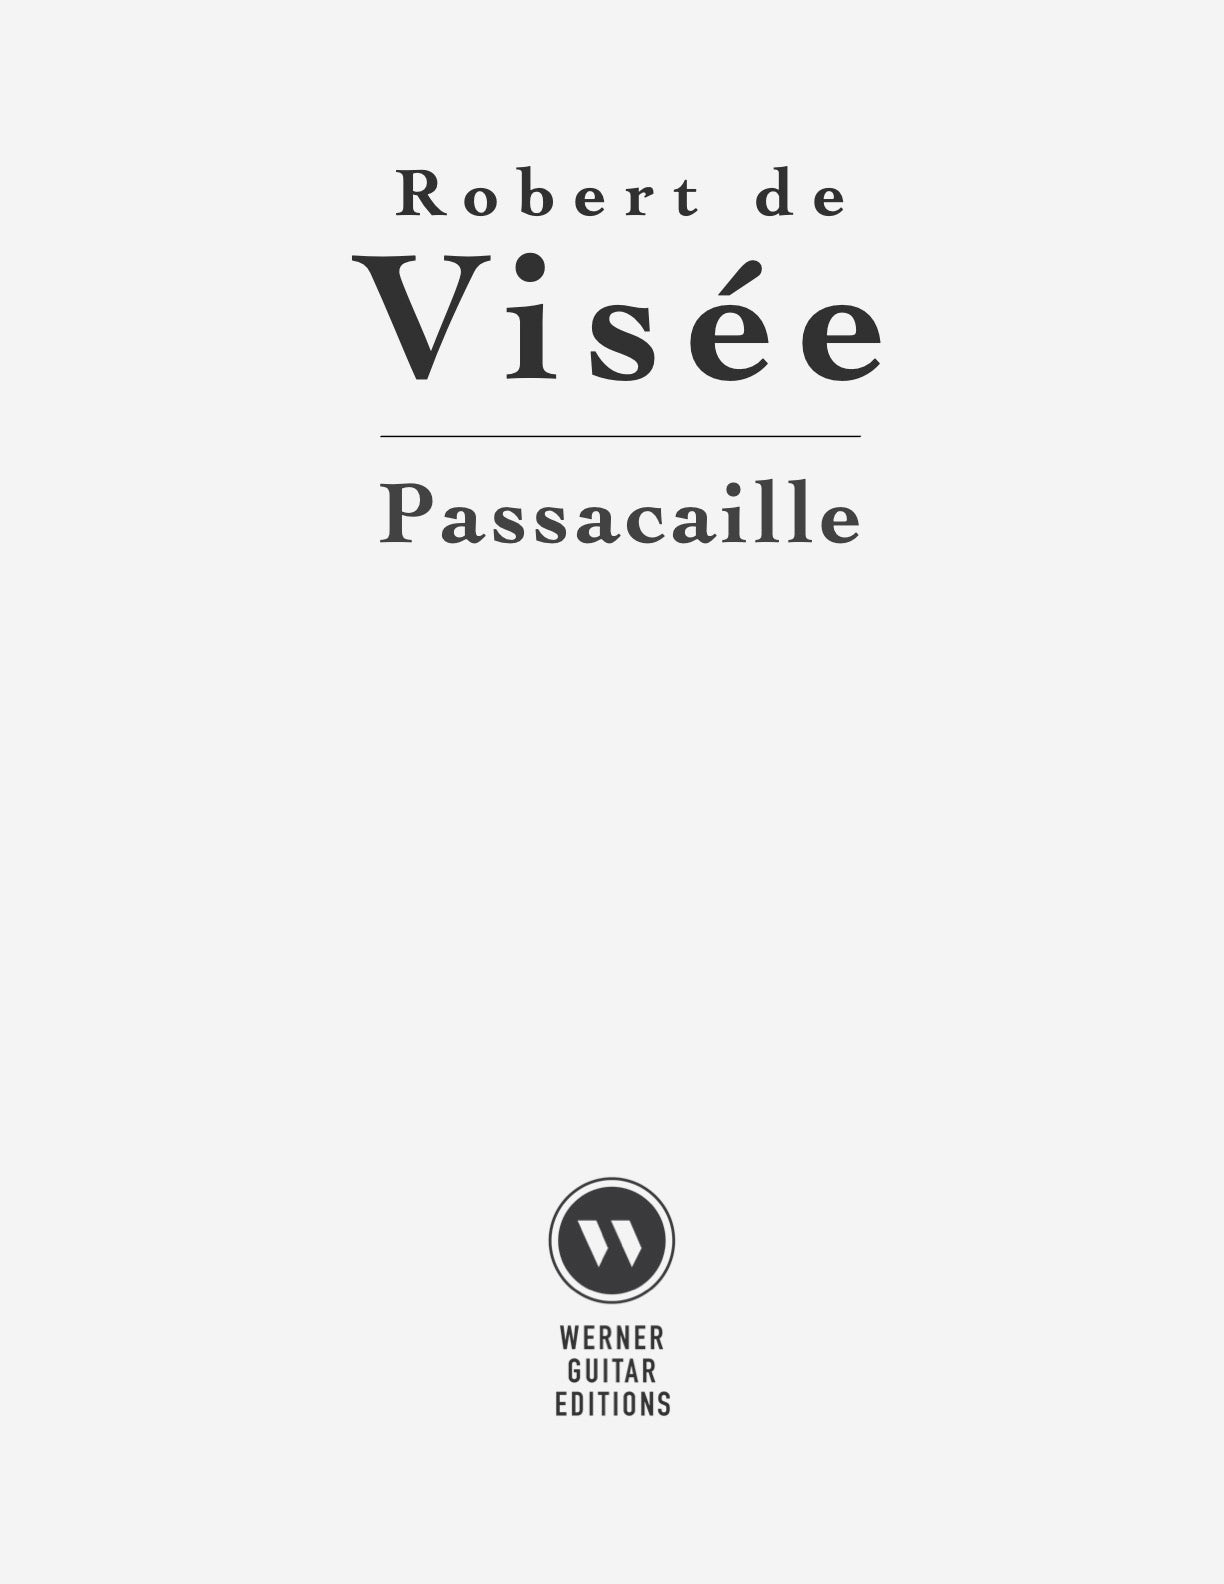 Passacaille by Robert de Visée (Sheet Music and Tab PDF)